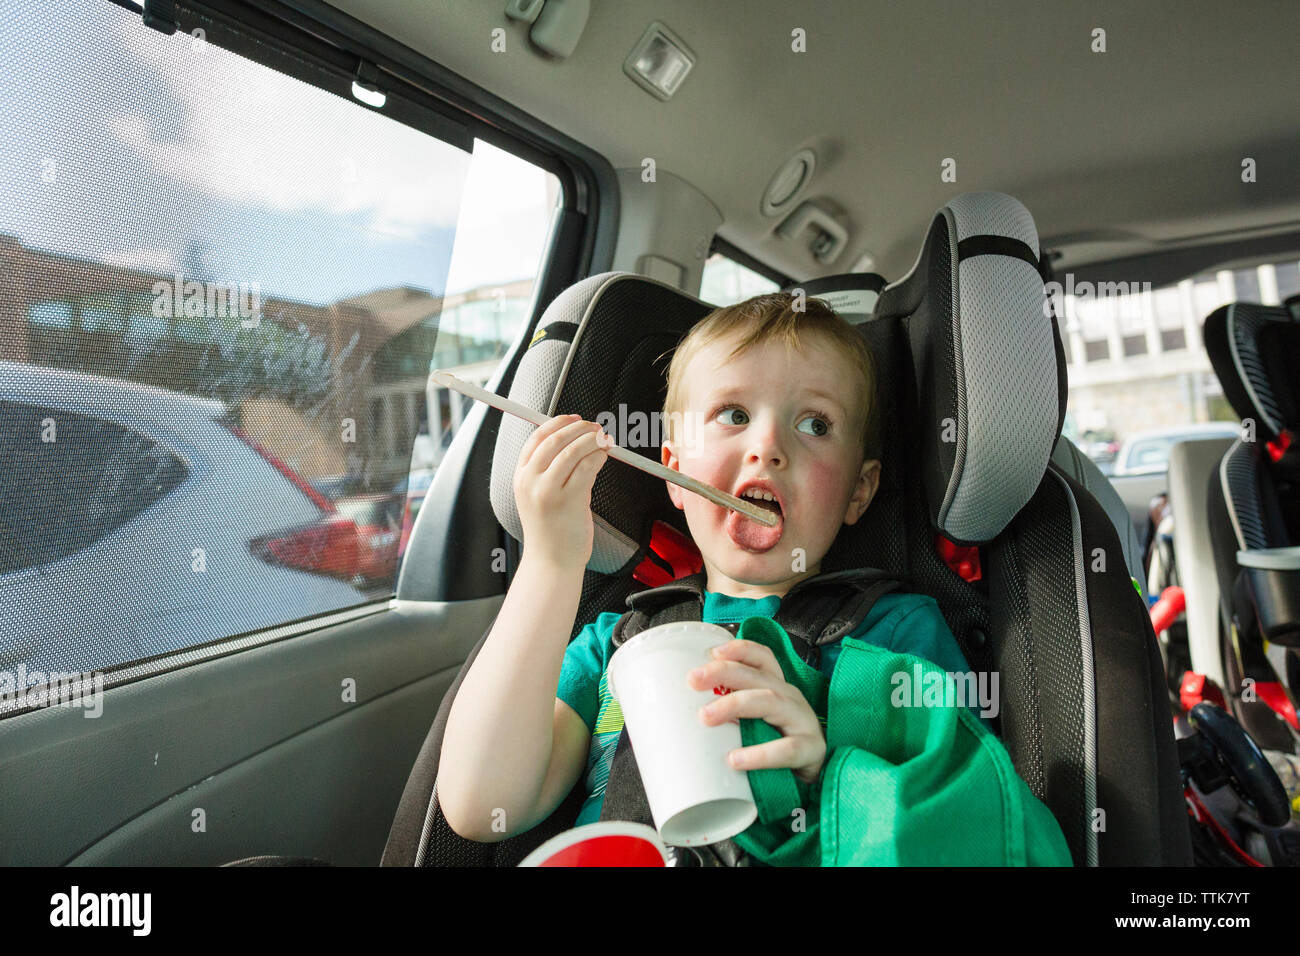 Chico lindo lamiendo paja para beber mientras está sentado en el asiento del vehículo en alquiler Foto de stock